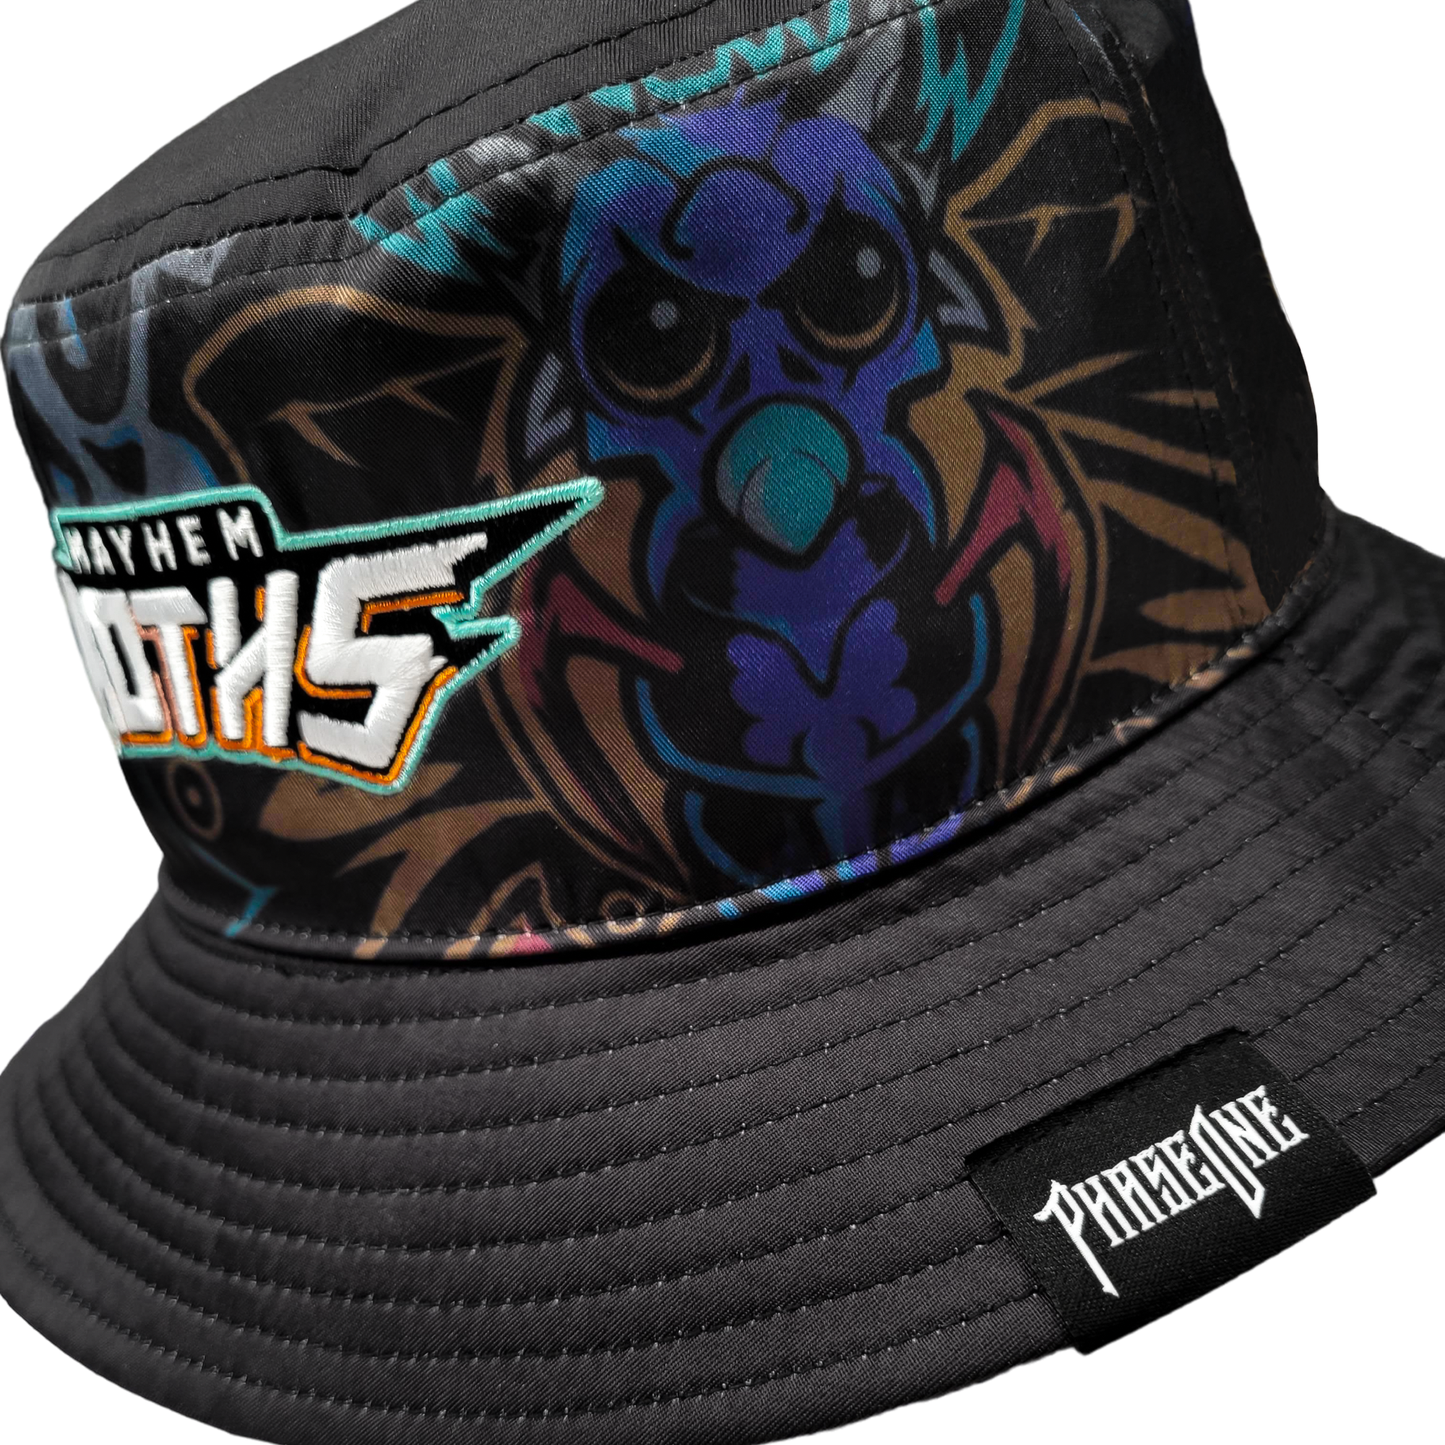 PhaseOne - Mayhem Moths Reversible Bucket Hat